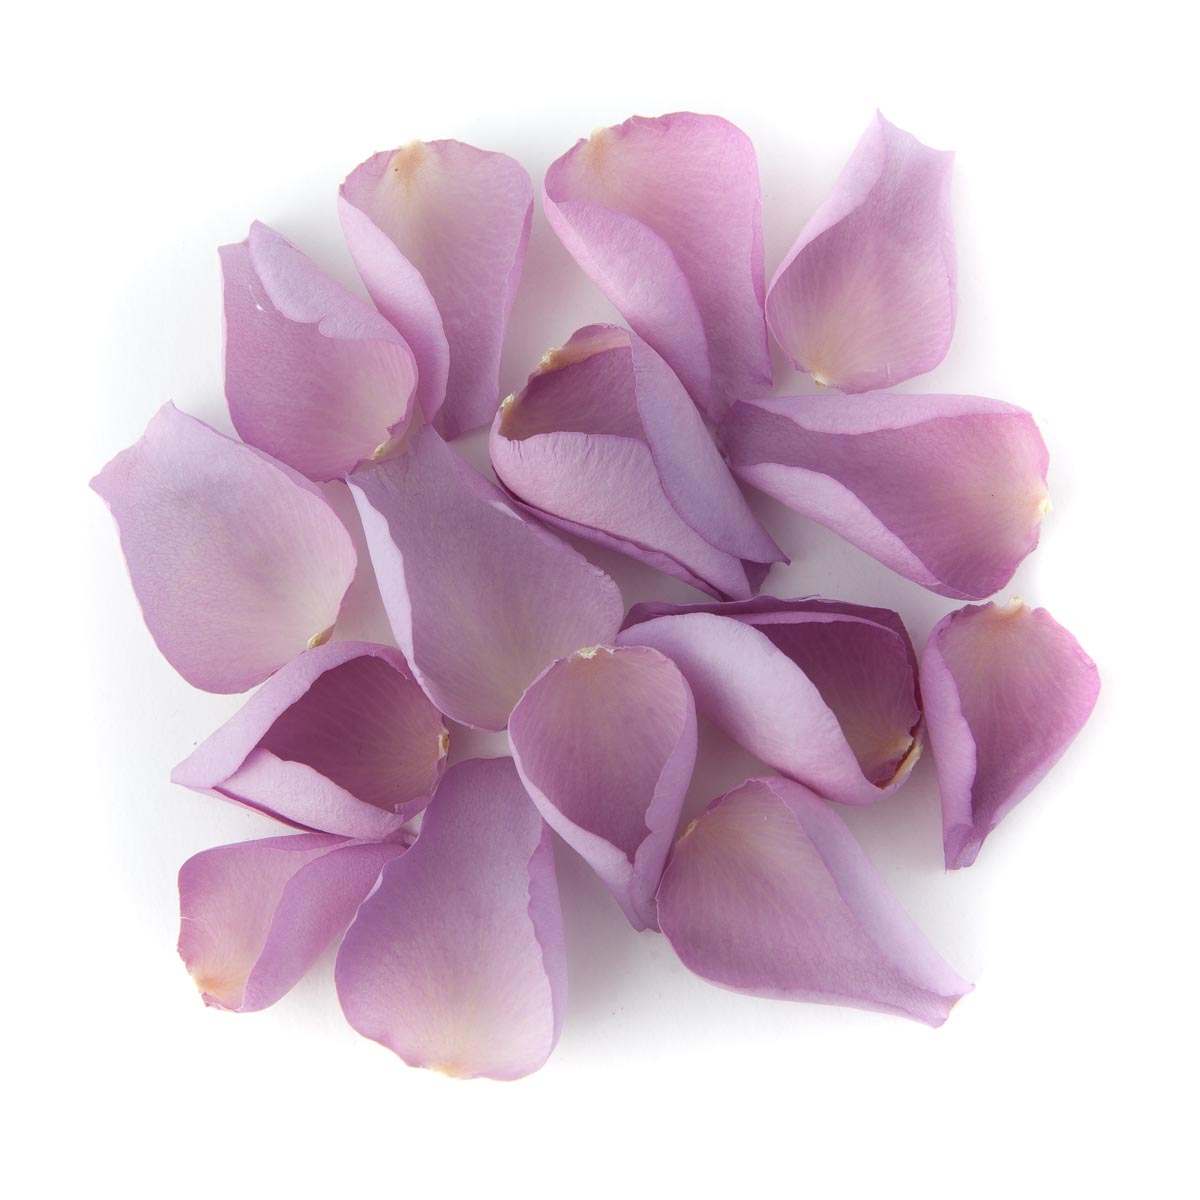 Petal Confetti - Mauve Large Natural Rose Petals